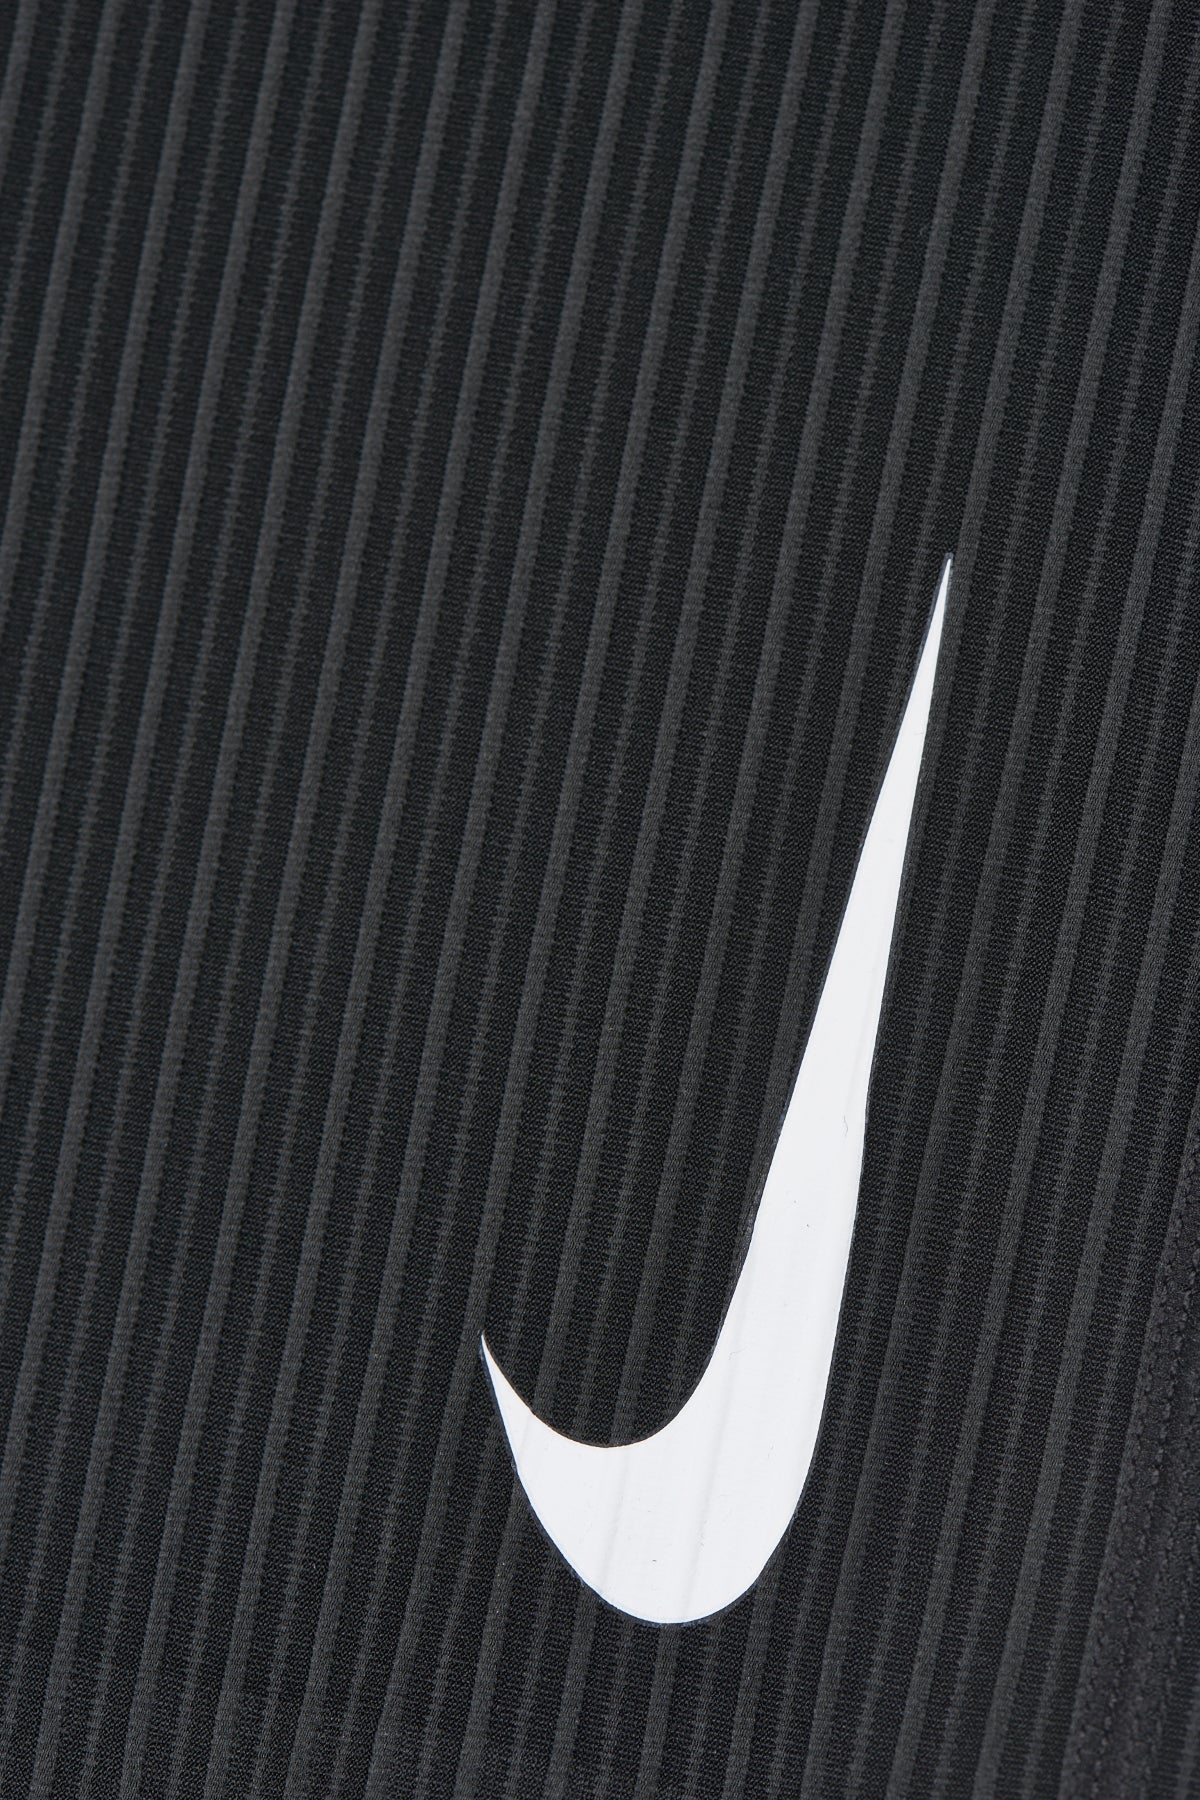 NIKE - W Nike AeroSwift Shorts